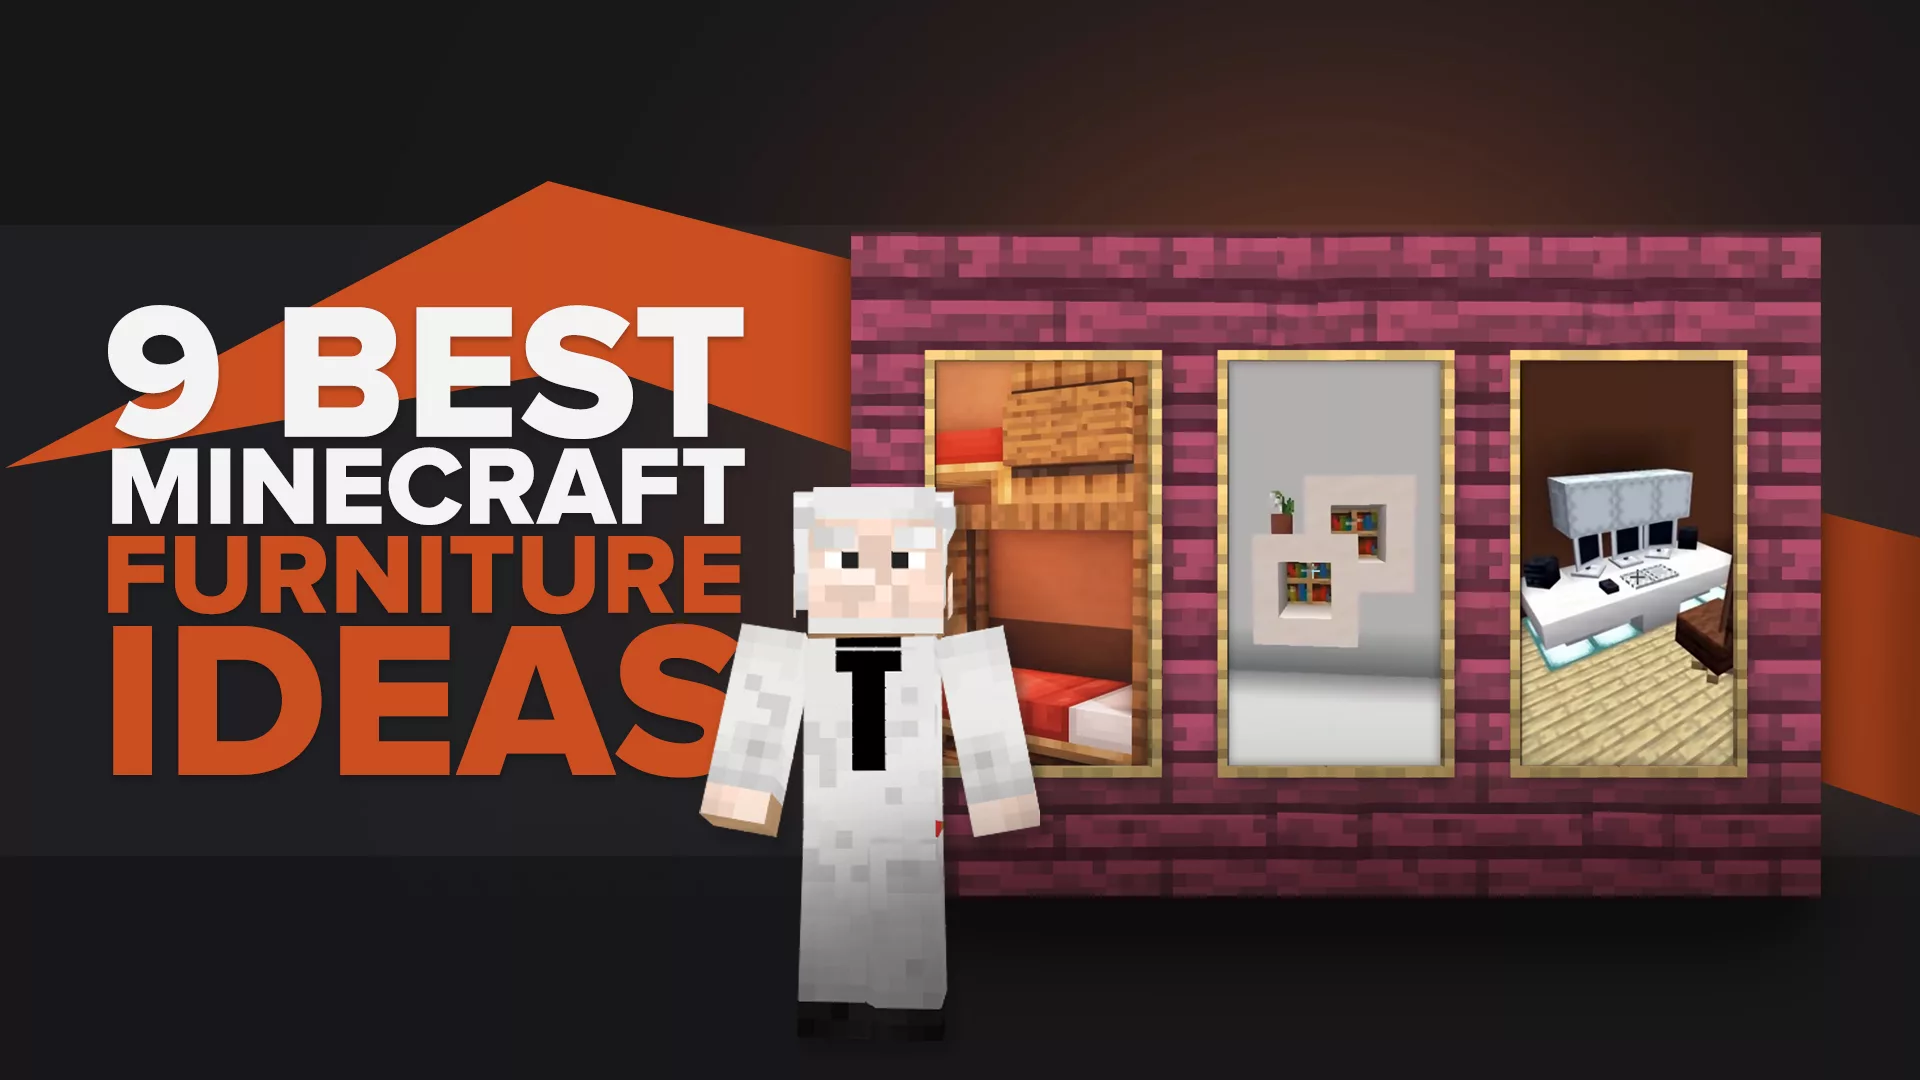 9 Best Minecraft Furniture Ideas